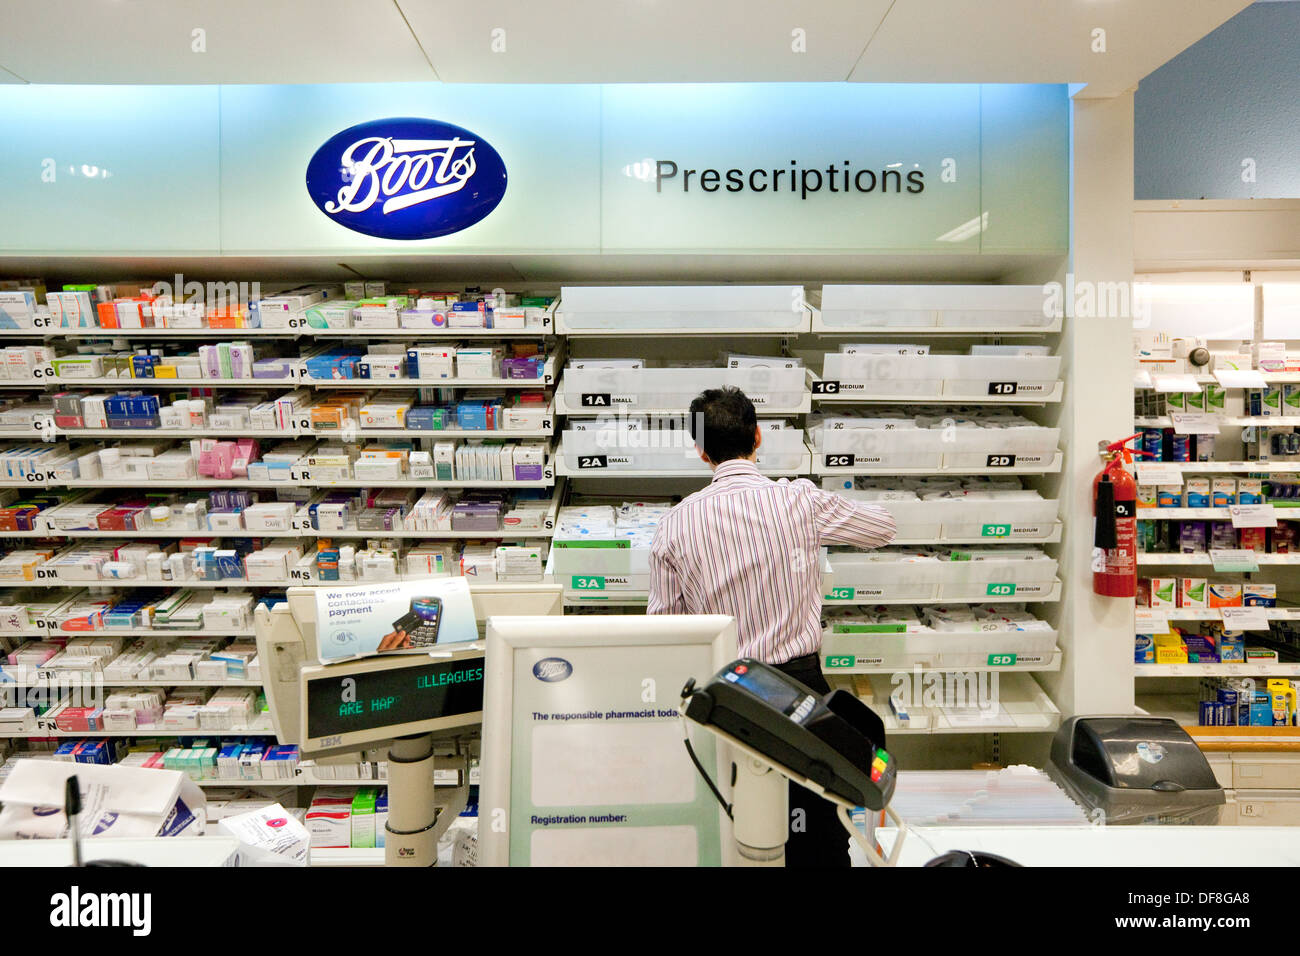 Mostrador de farmacia; interior de farmacia del Reino Unido; Boots the Chemist, el farmacéutico que trabaja en la farmacia, Reino Unido Foto de stock